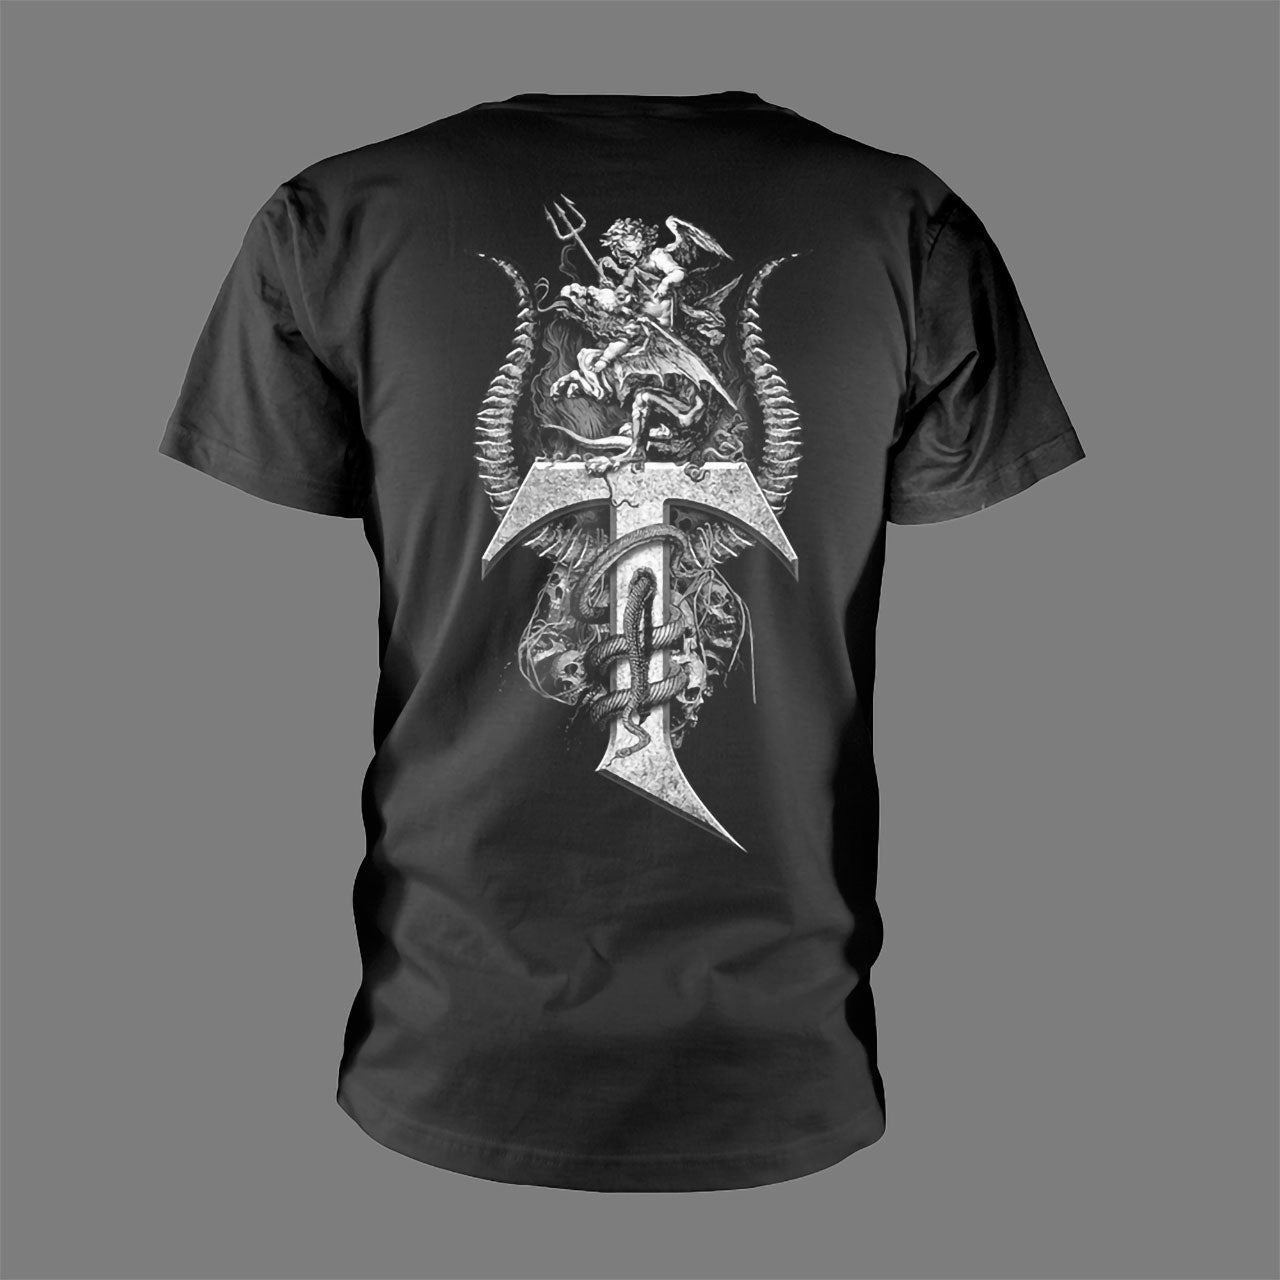 Testament - Demon Court (T-Shirt)